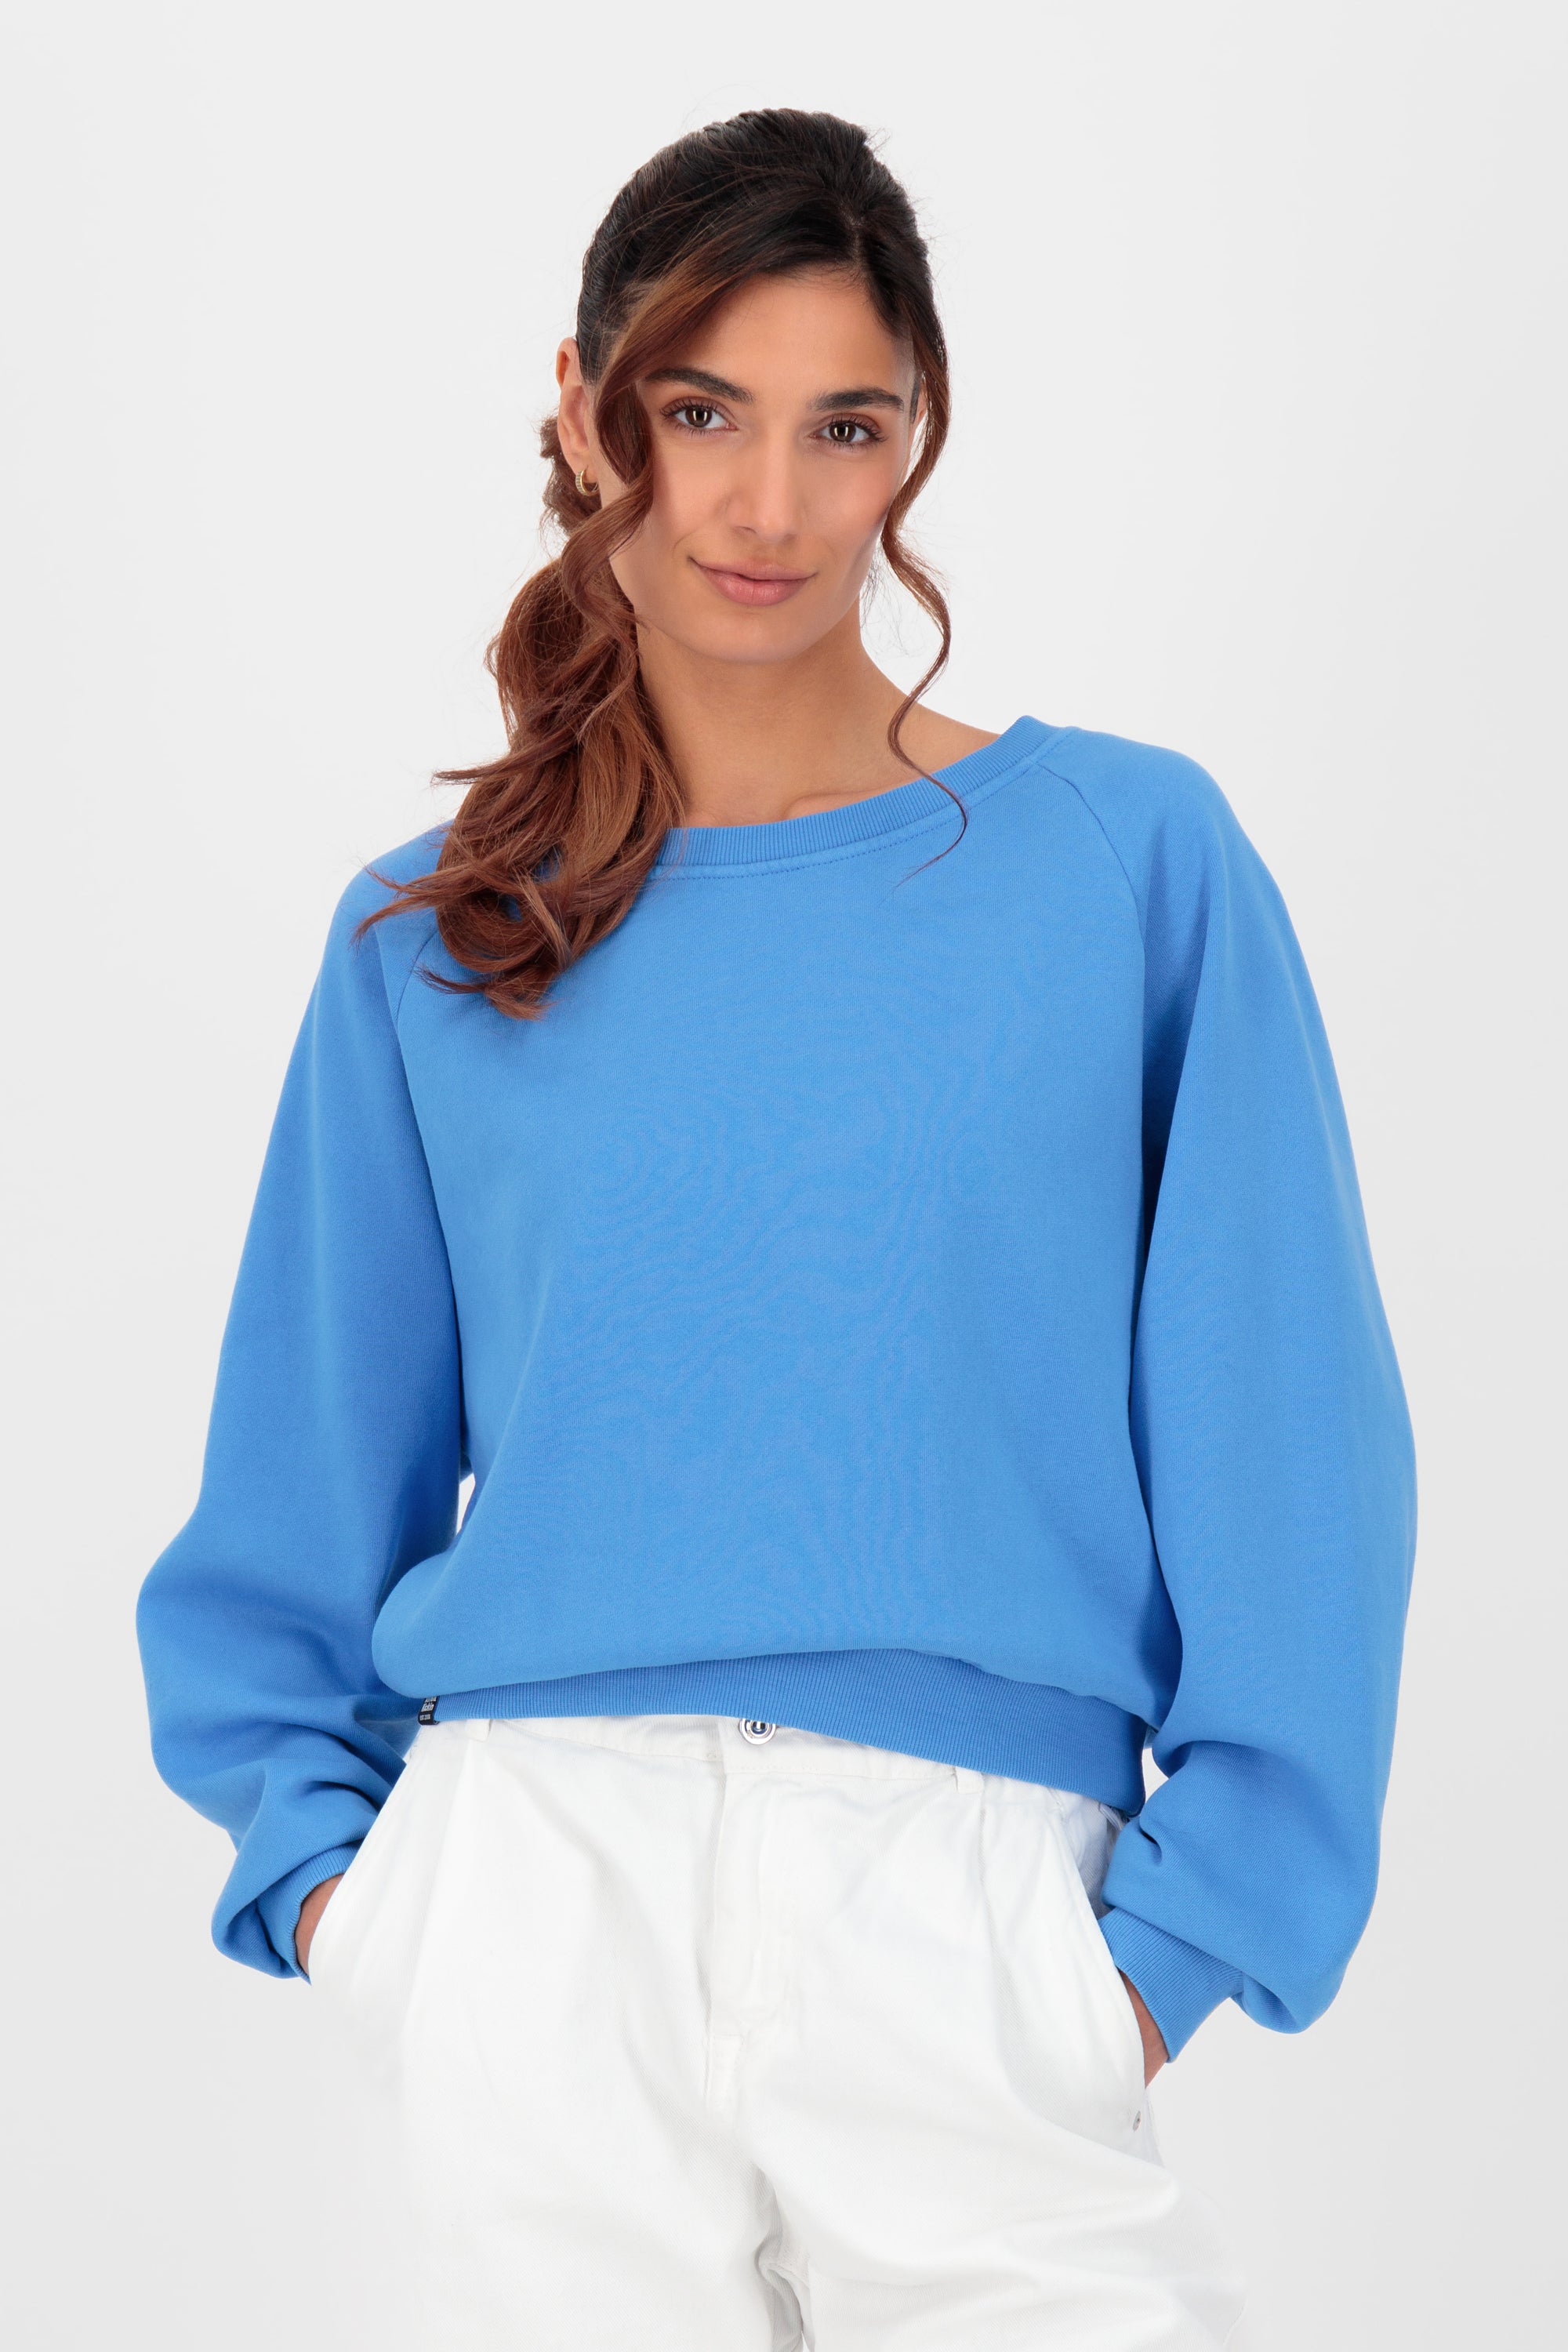 TeonaAK A Oversize Sweatshirt  Blau